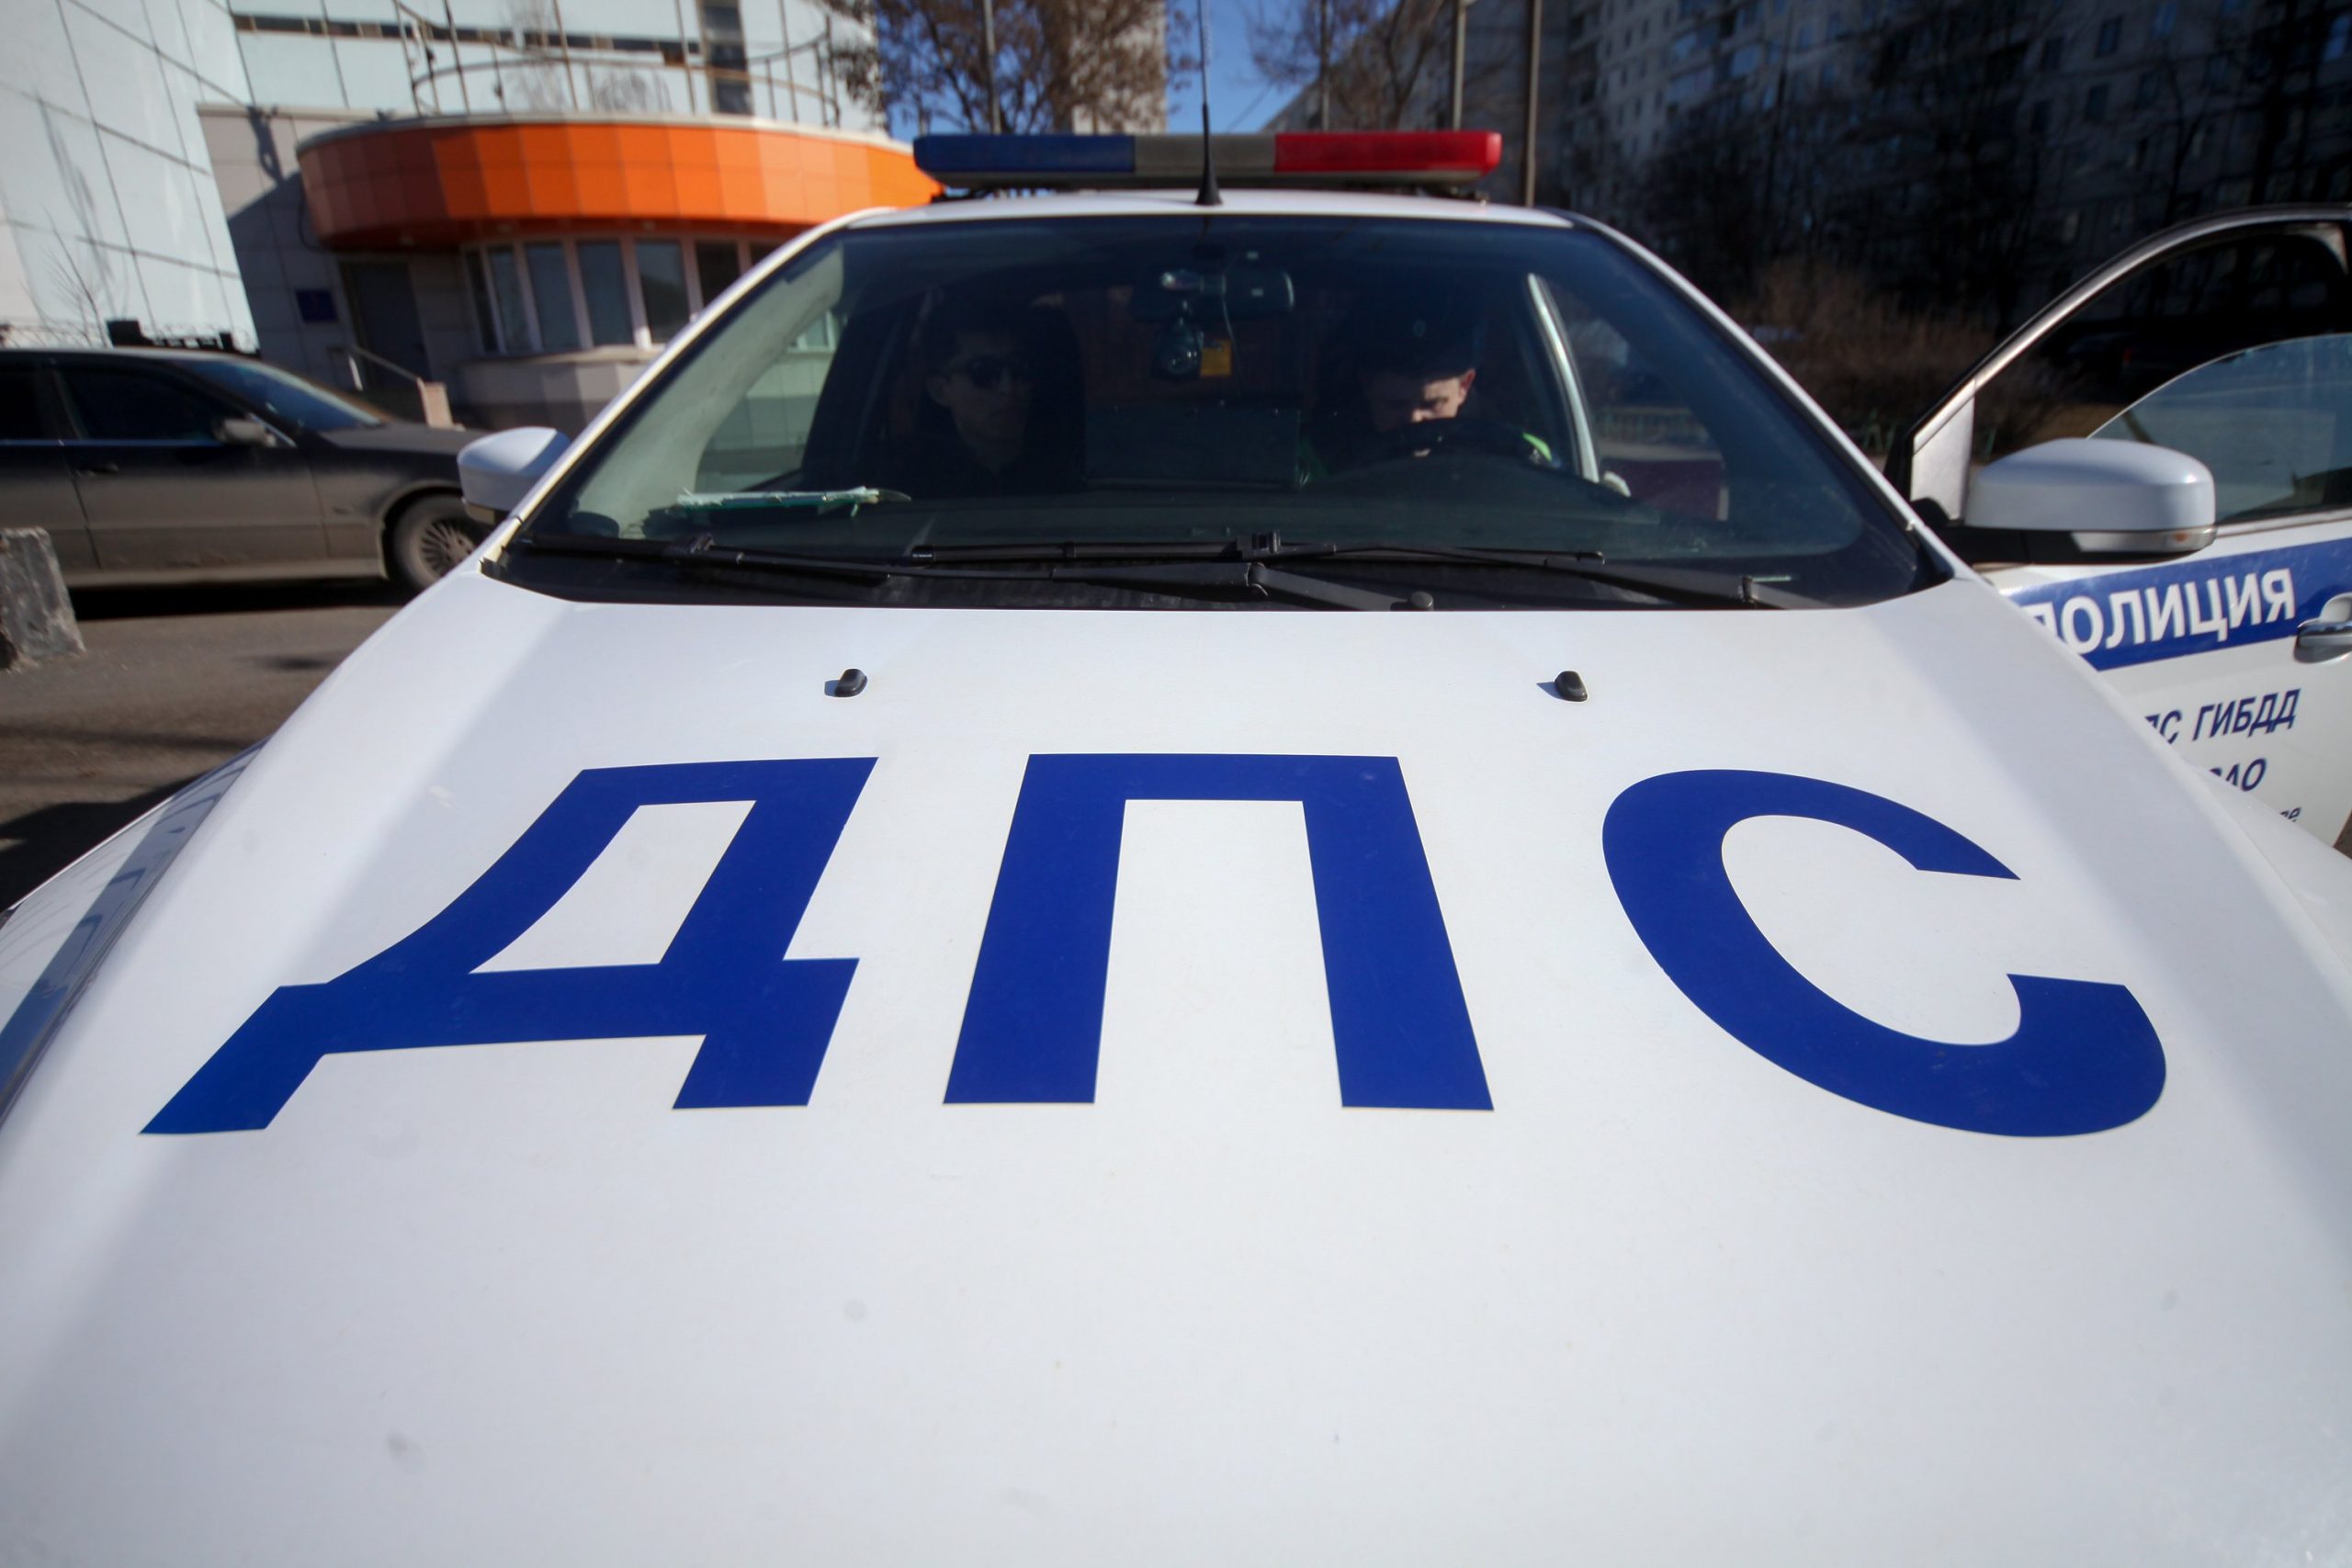 На Волгоградском проспекте задержали водителя в состоянии алкогольного опьянения